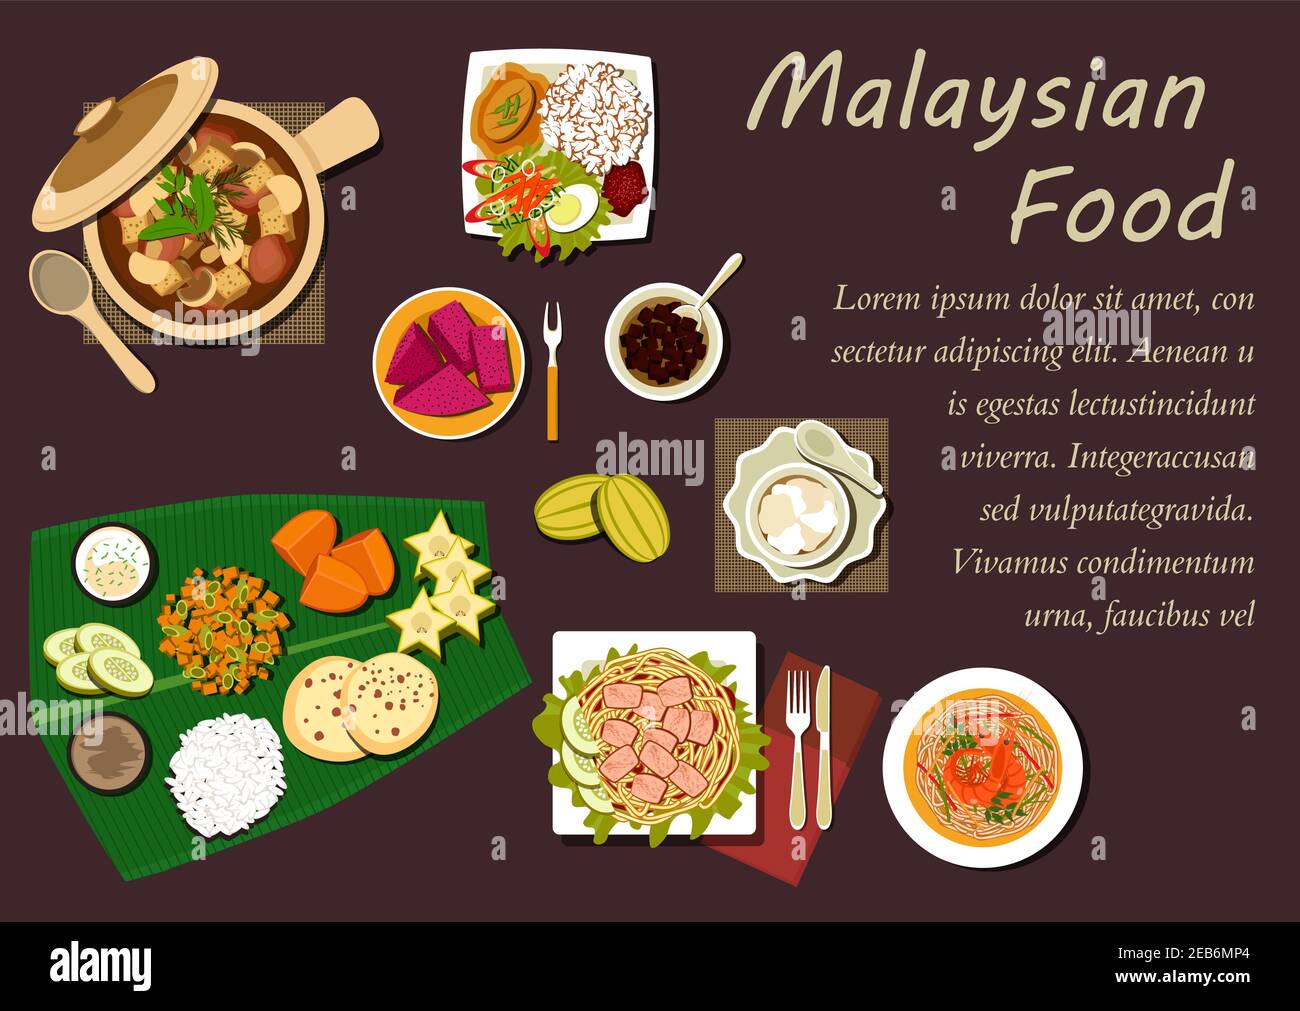 Cucina malese con riso nasi limak, noodle di gamberi, noodle tofu con curry, stufato di maiale con funghi e tofu, frutto della passione, carambola, mango, pino Illustrazione Vettoriale